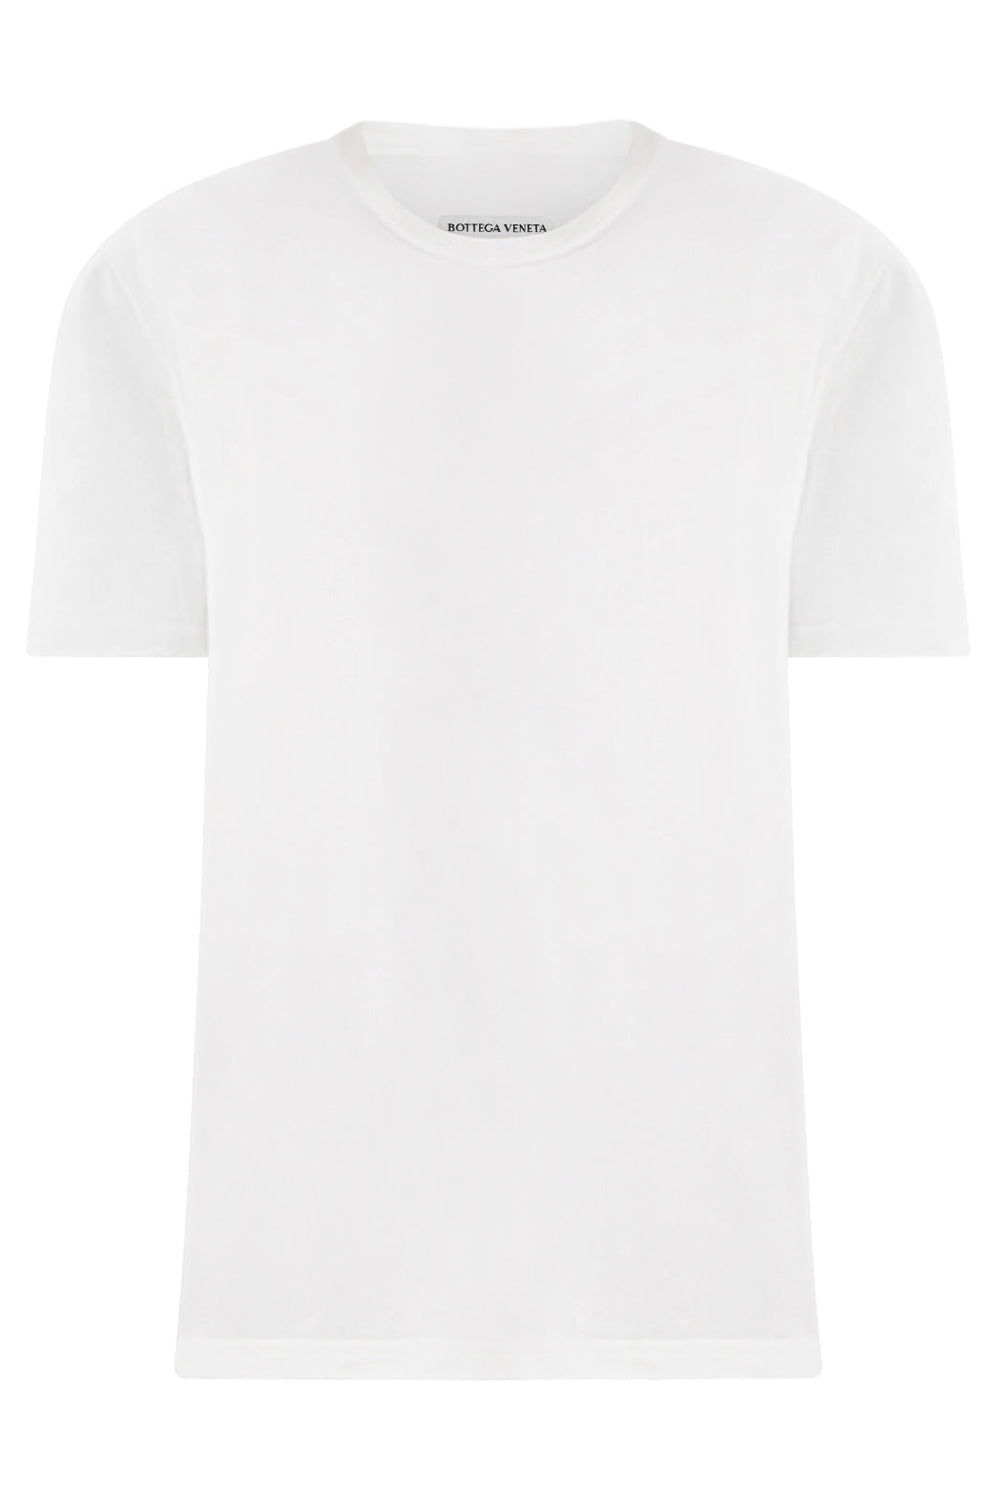 BOTTEGA VENETA RTW Sunrise Cotton T-shirt | Chalk